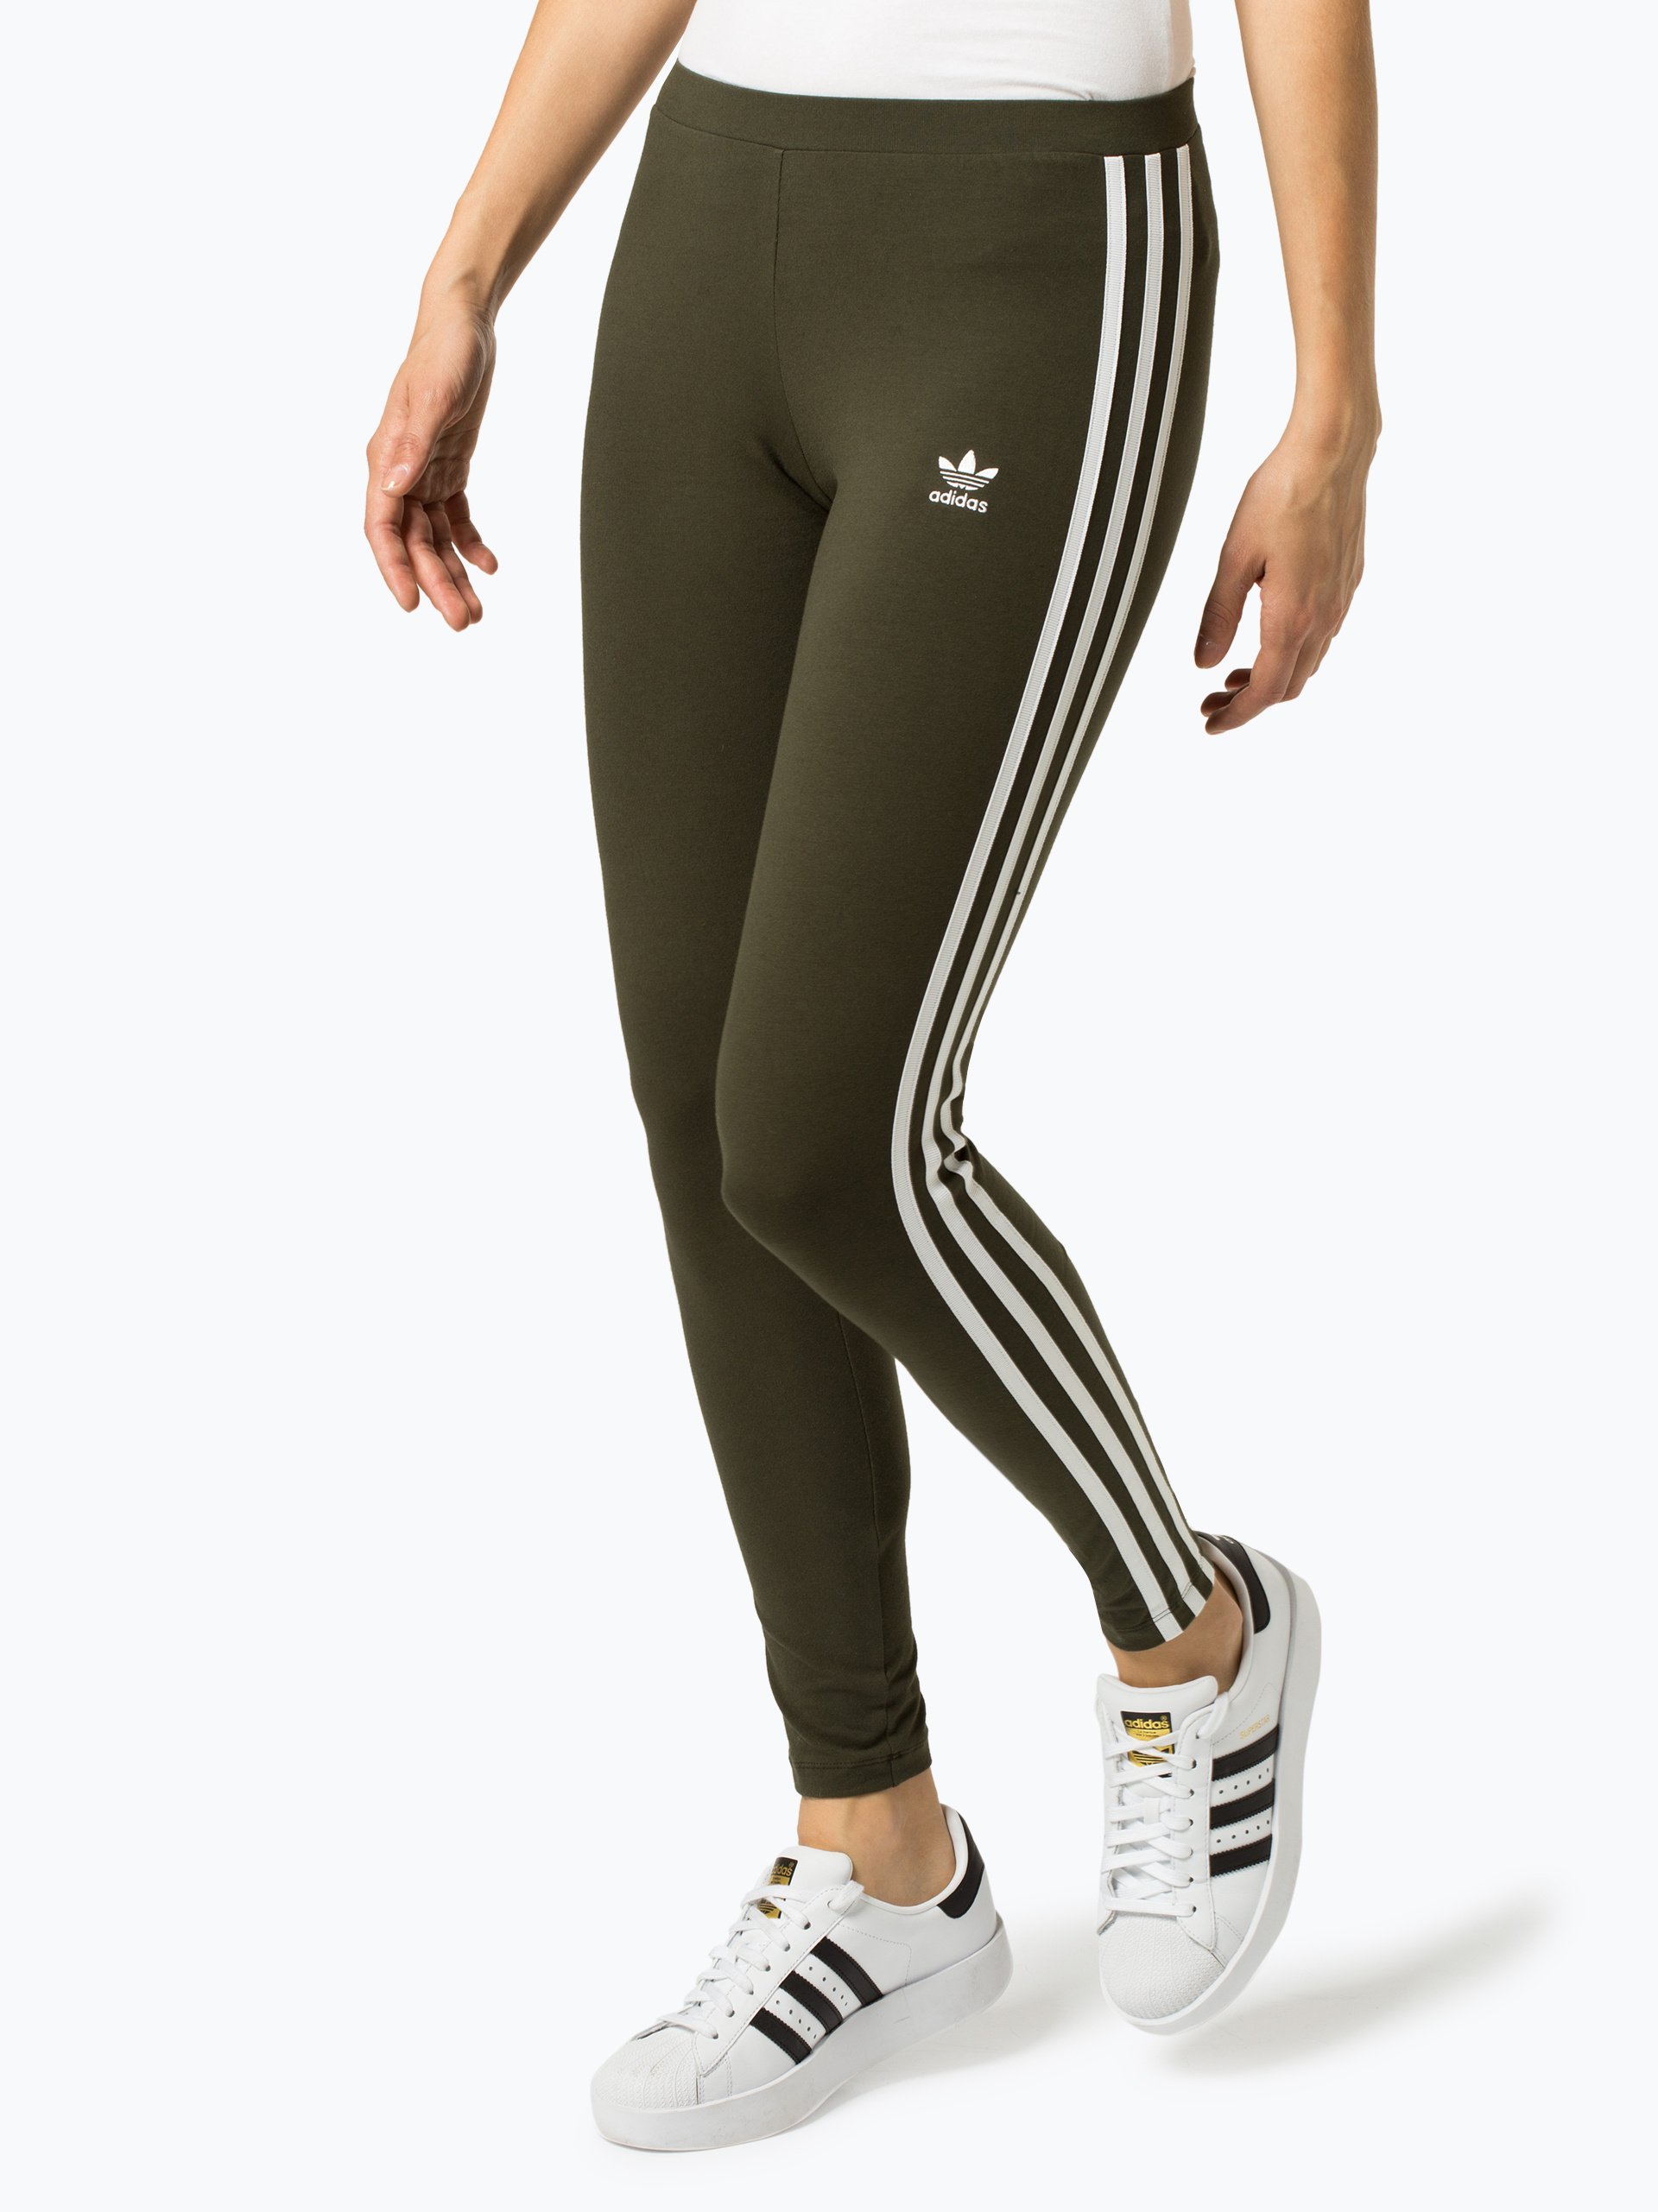 https://static.vangraaf.com/img/adidas-originals-damen-sportswear-leggings_pdzoom_431087-0001_modelfront_1.jpg